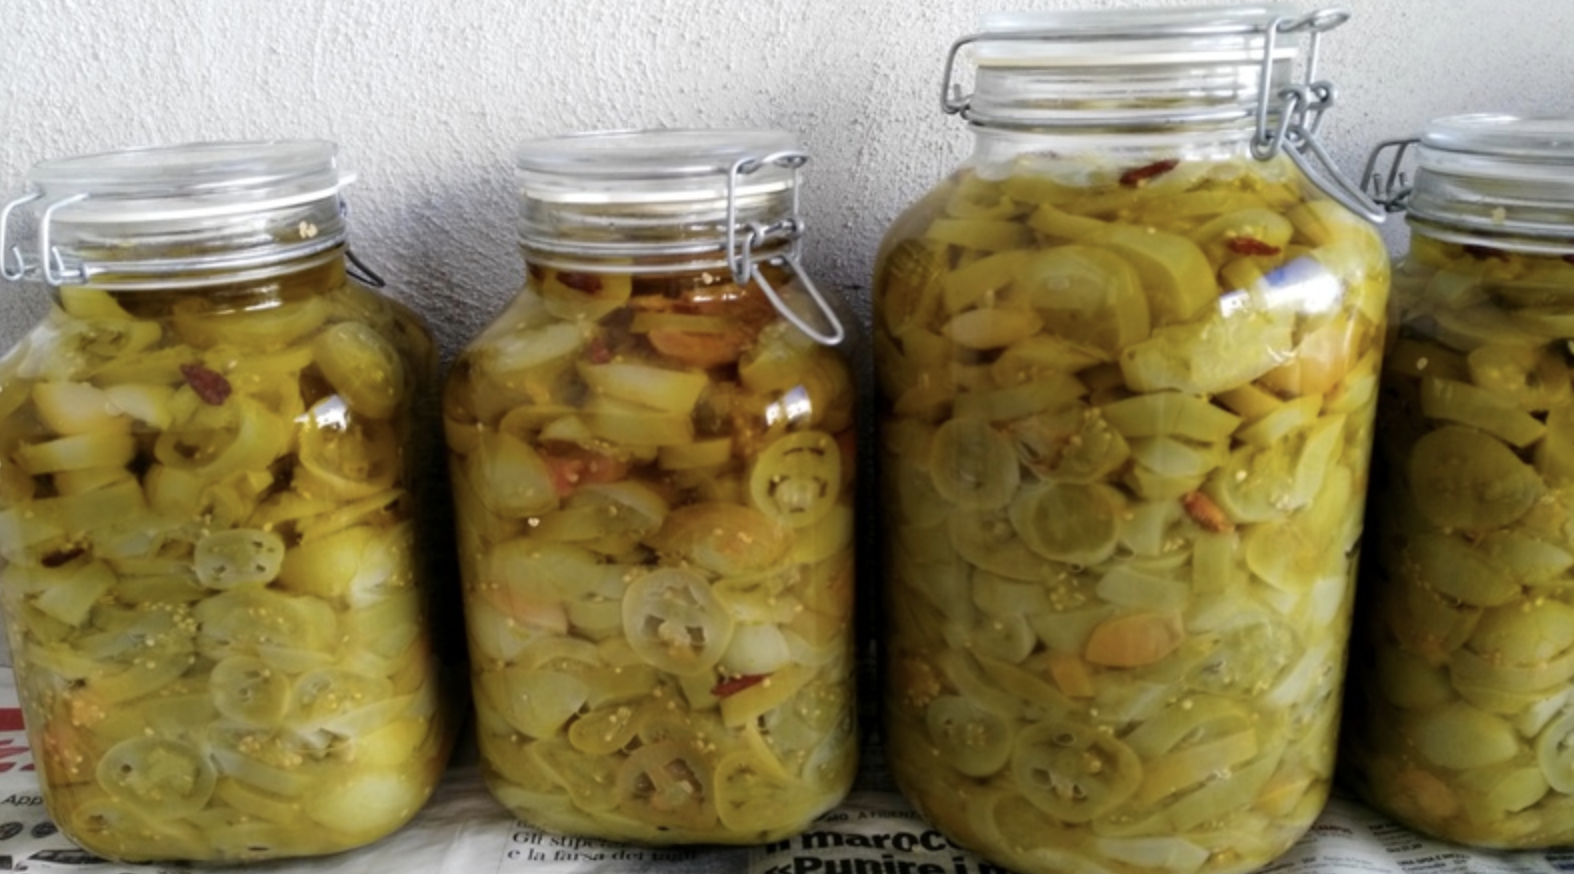 pomodori-verdi-sott’olio:-da-preparare-ora-e-consumare-a-natale